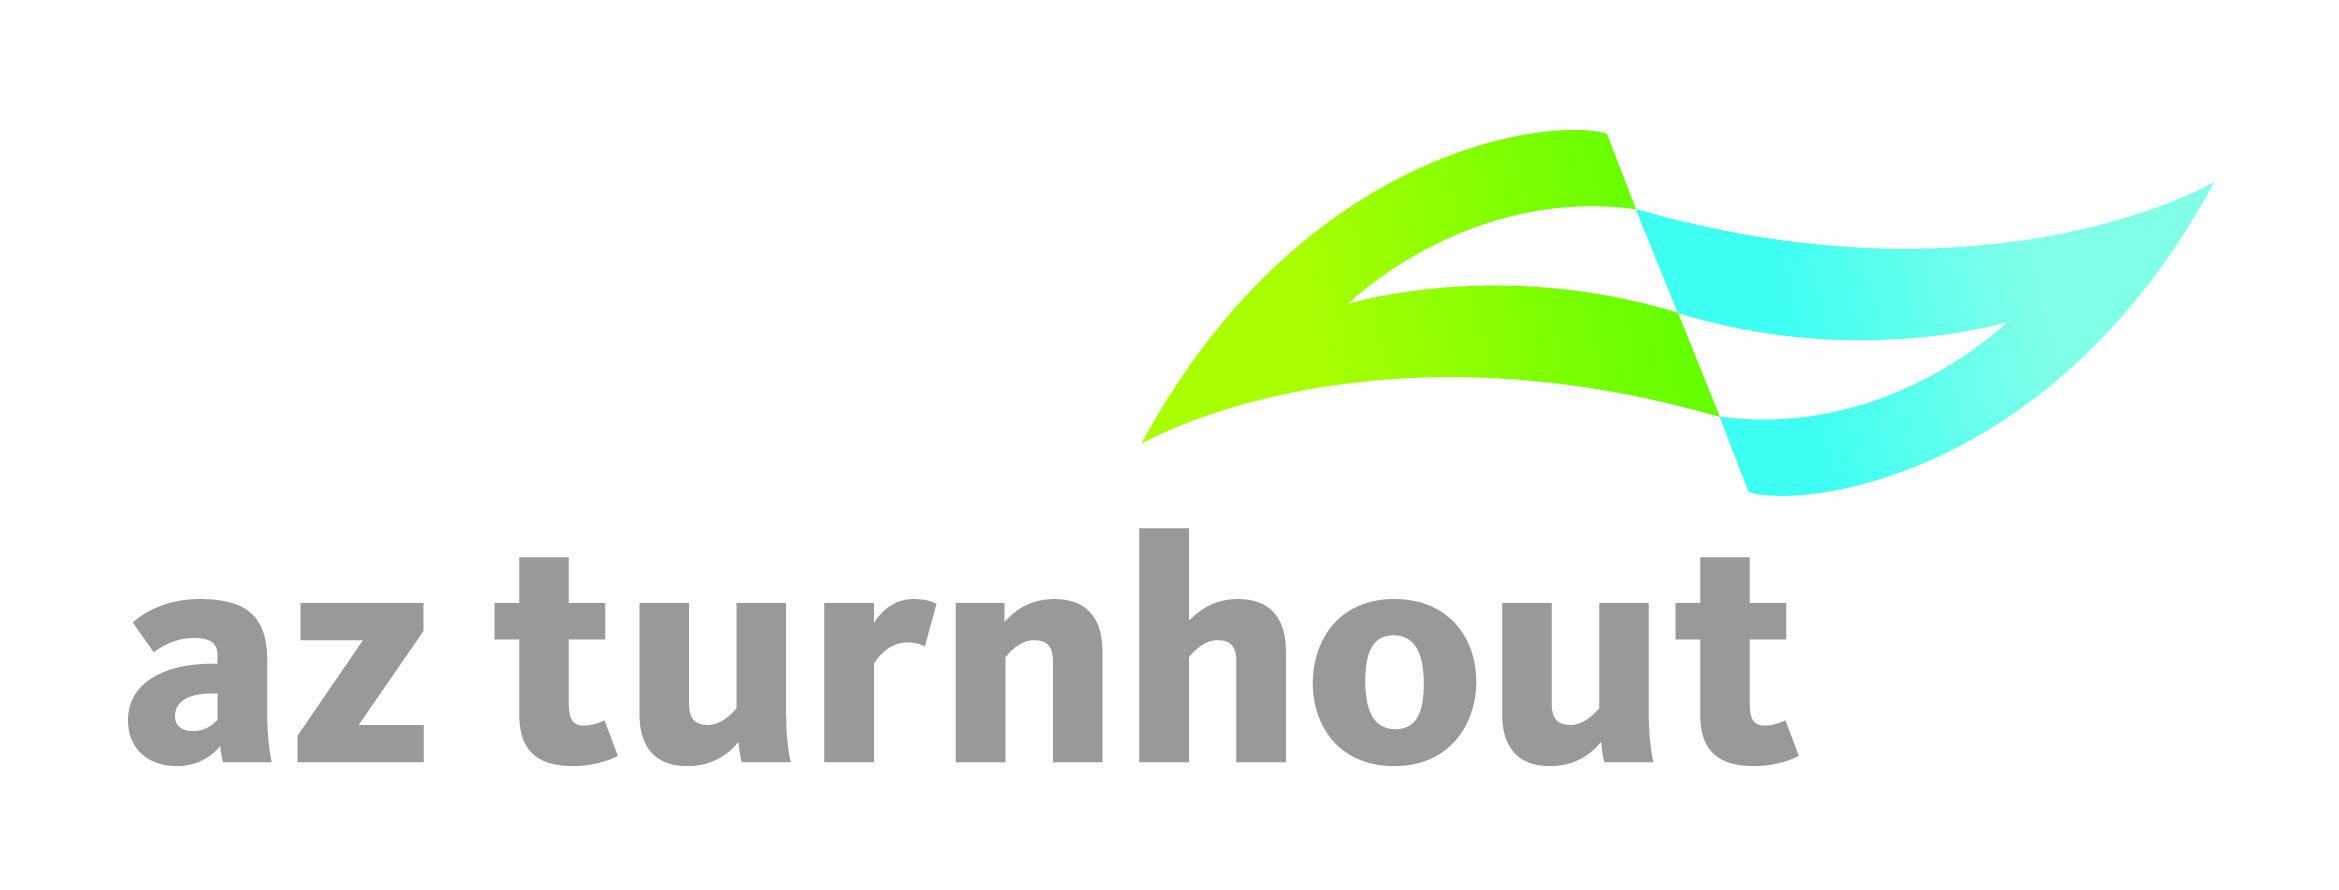 AZ Turnhout logo